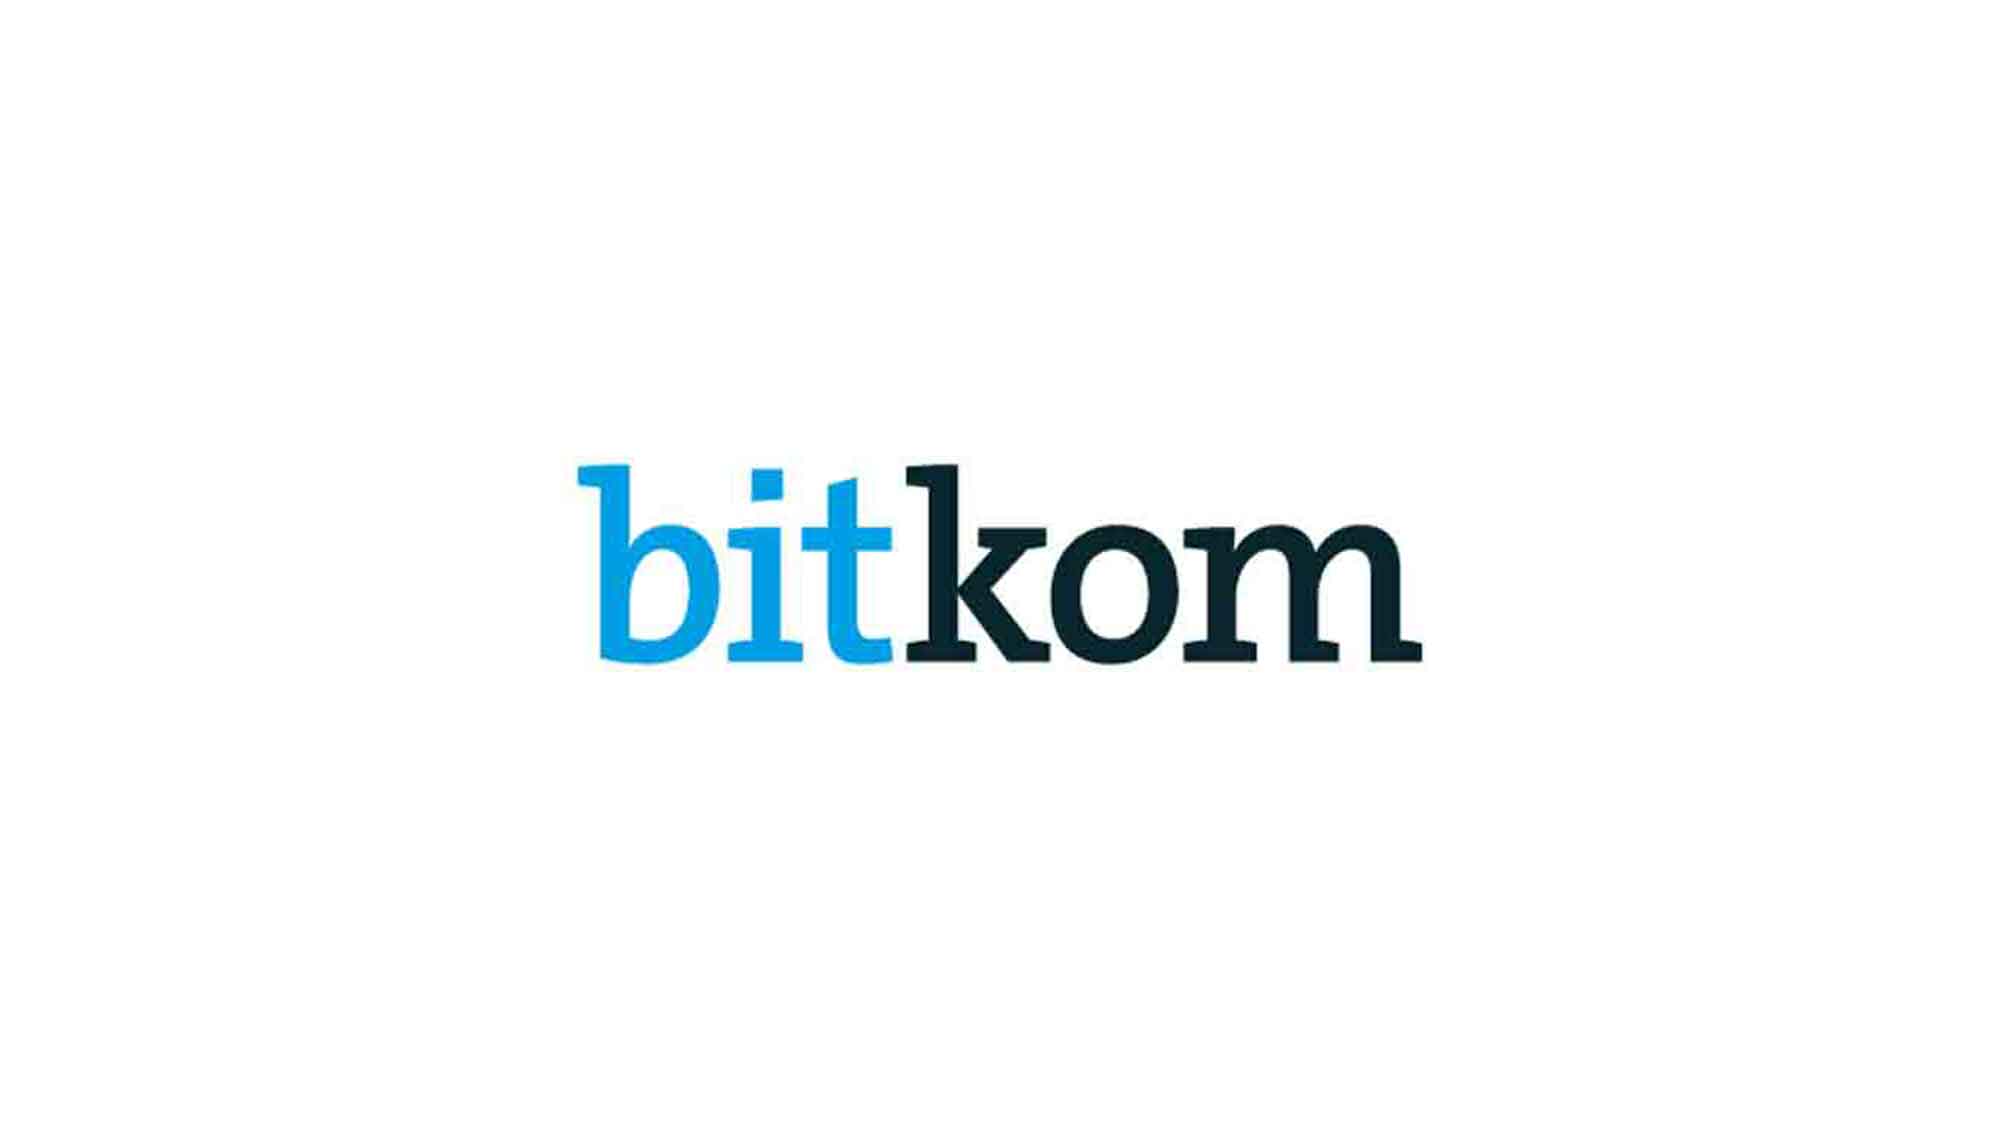 Bitkom: Marktplatz Internet: 4 von 5 verkaufen privat im Netz